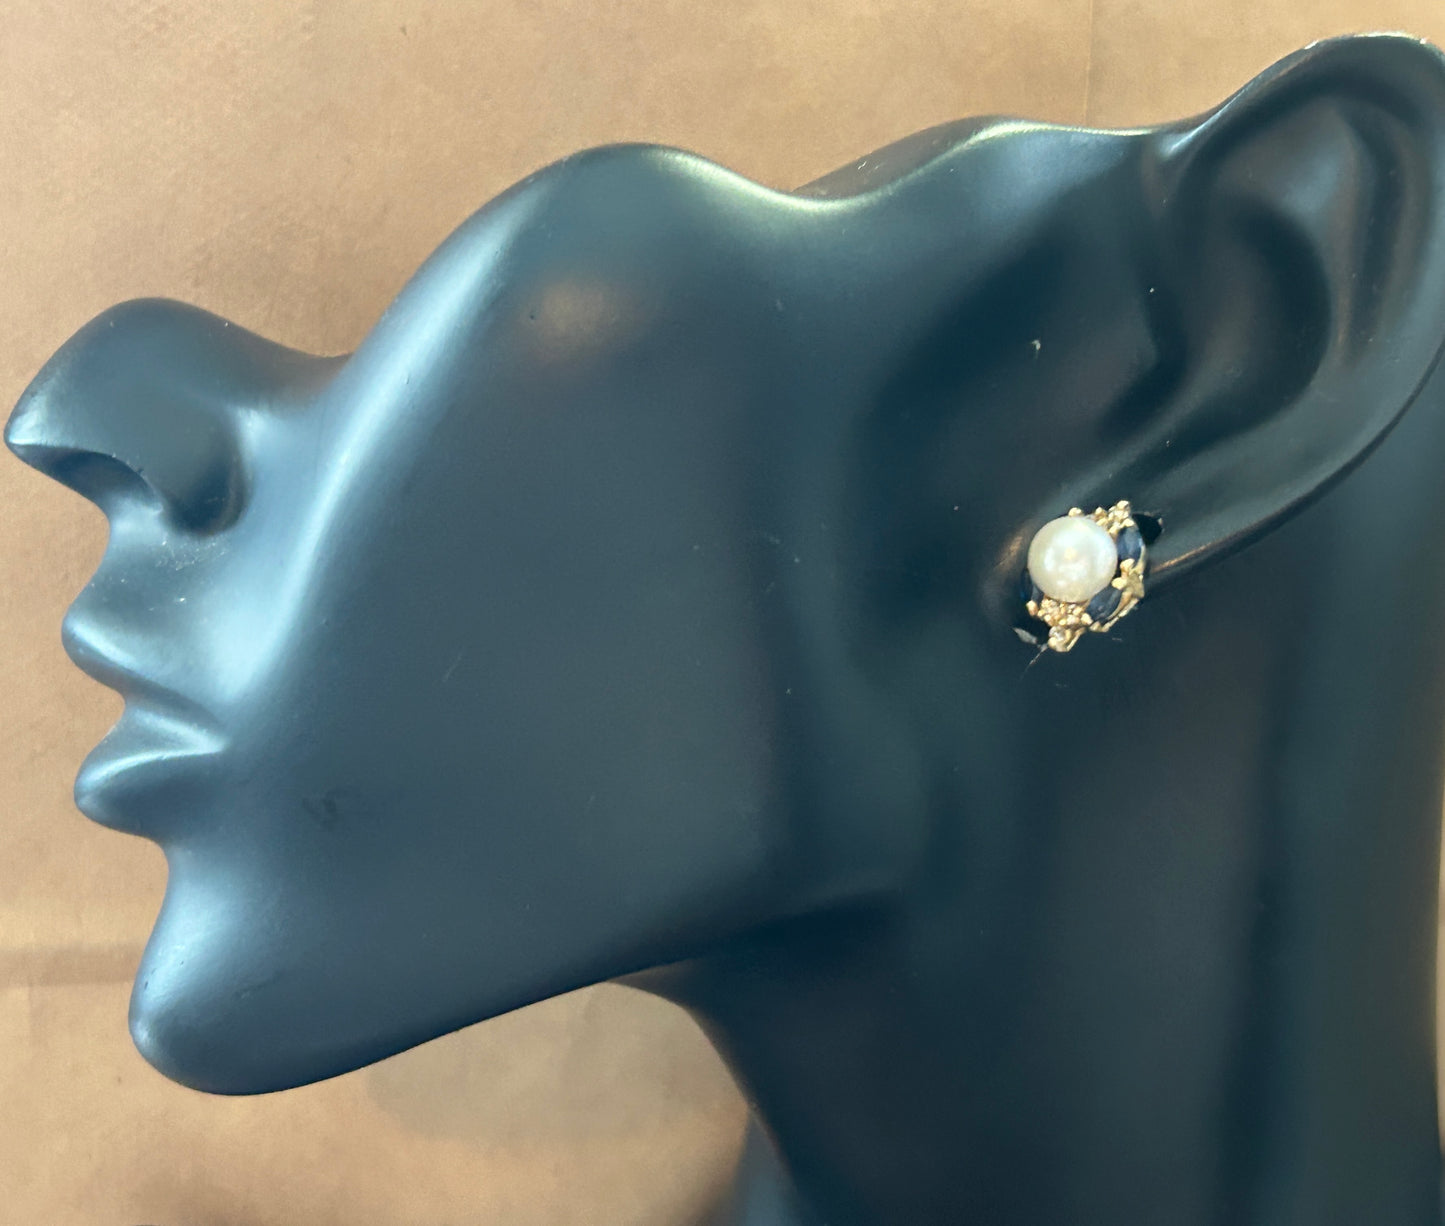 14k Yellow Gold 7mm Pearl Sapphire Diamond Stud Pierced Earrings